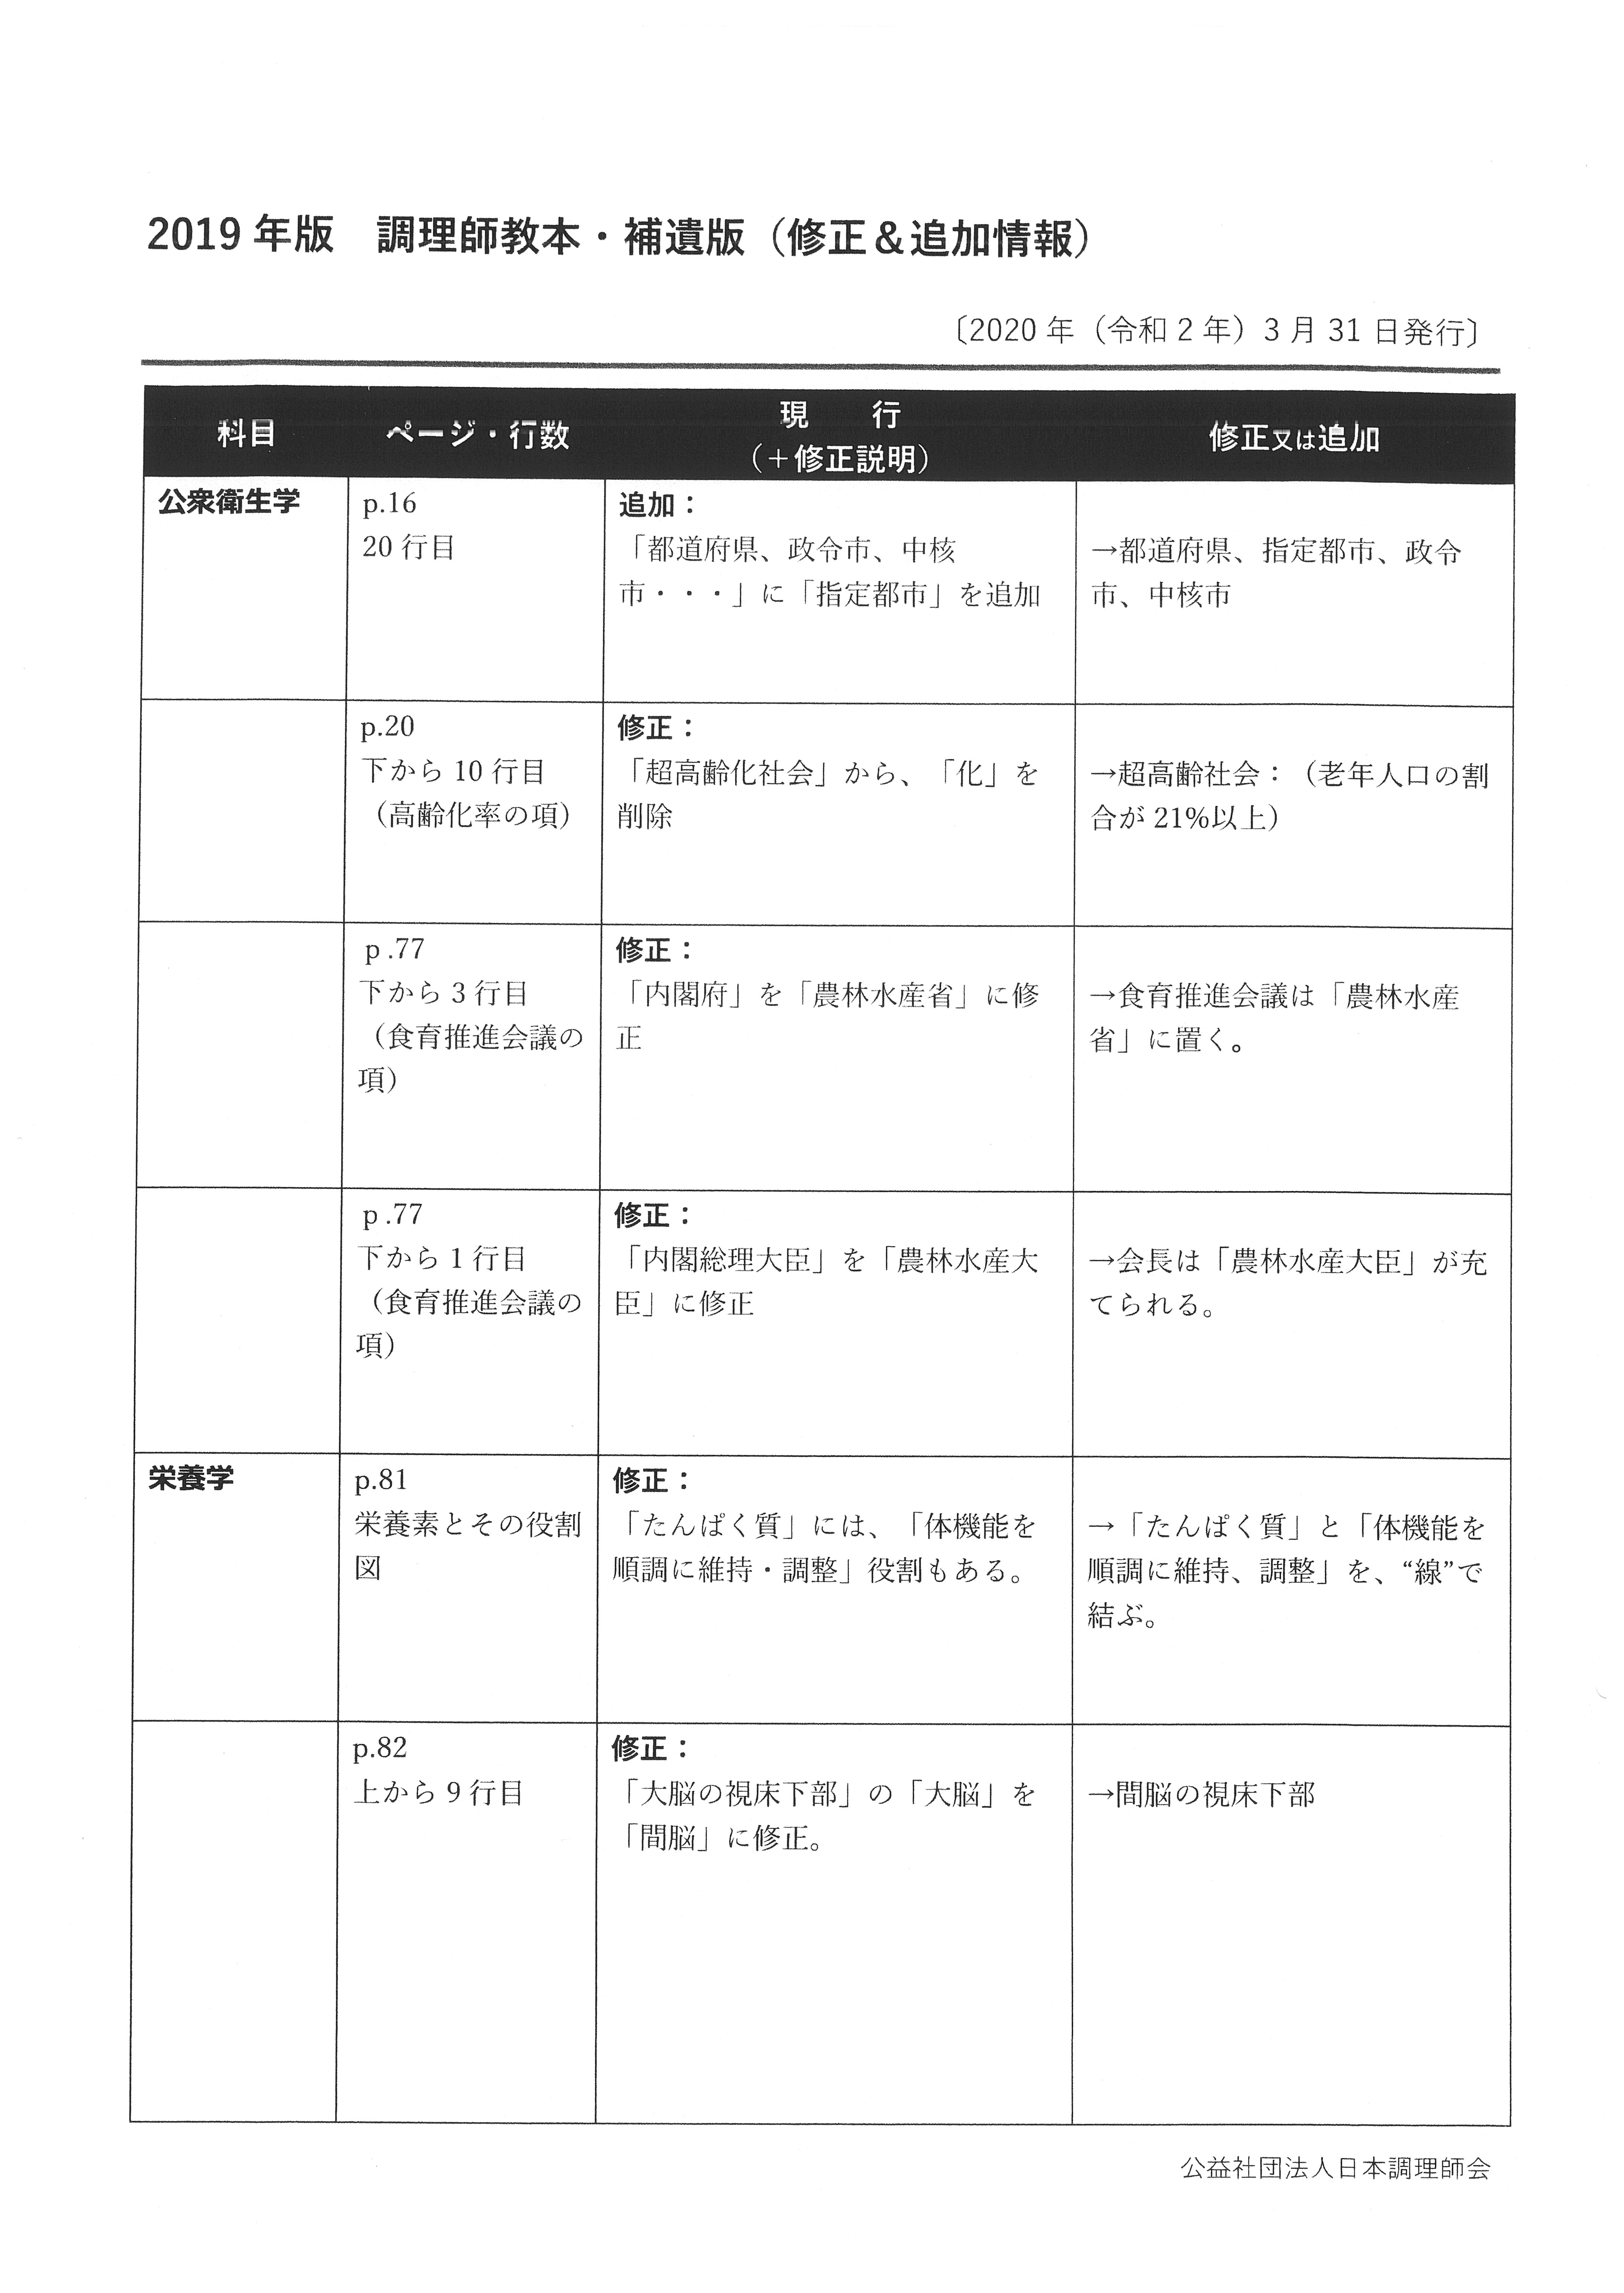 調理師試験情報 | 公益社団法人 日本調理師会